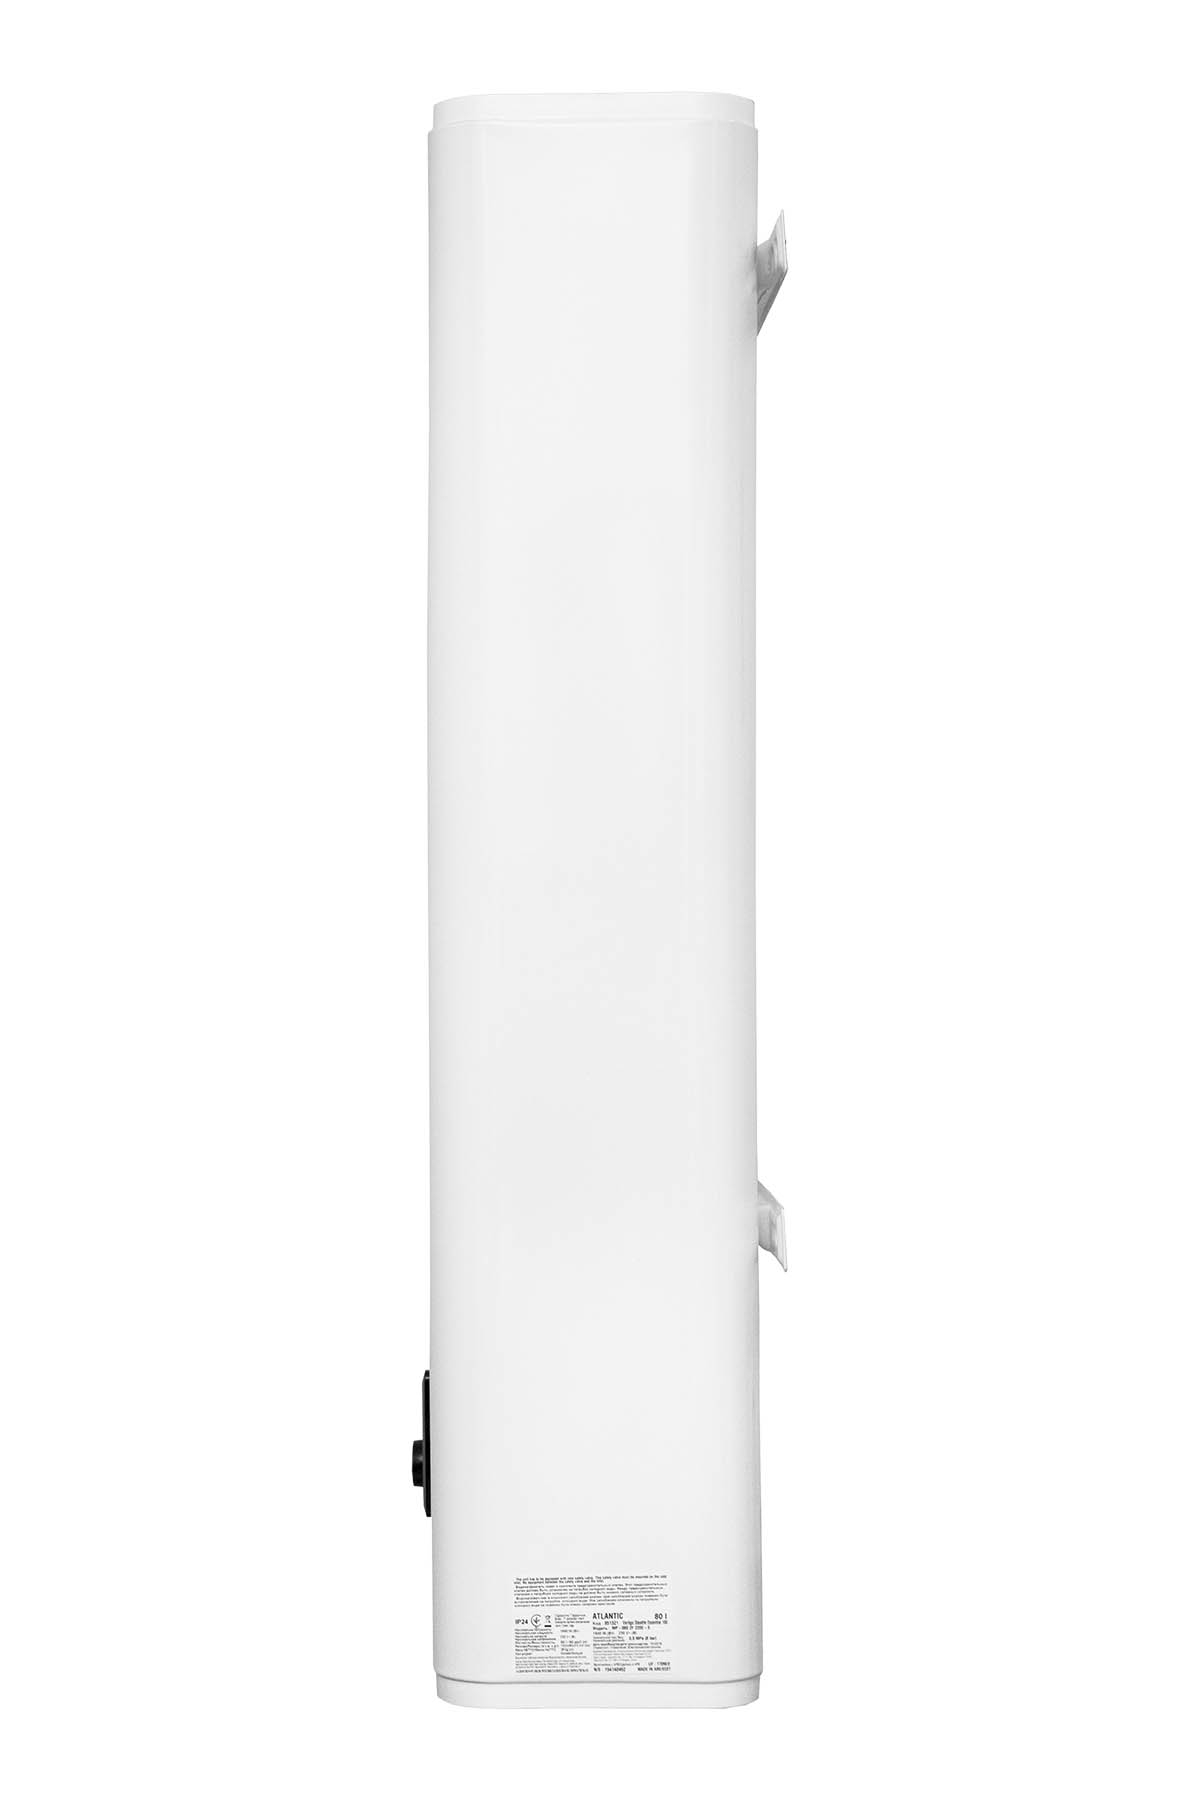 Бойлер Atlantic Vertigo Steatite Essential 100 MP-080 2F 220E-S обзор - фото 8